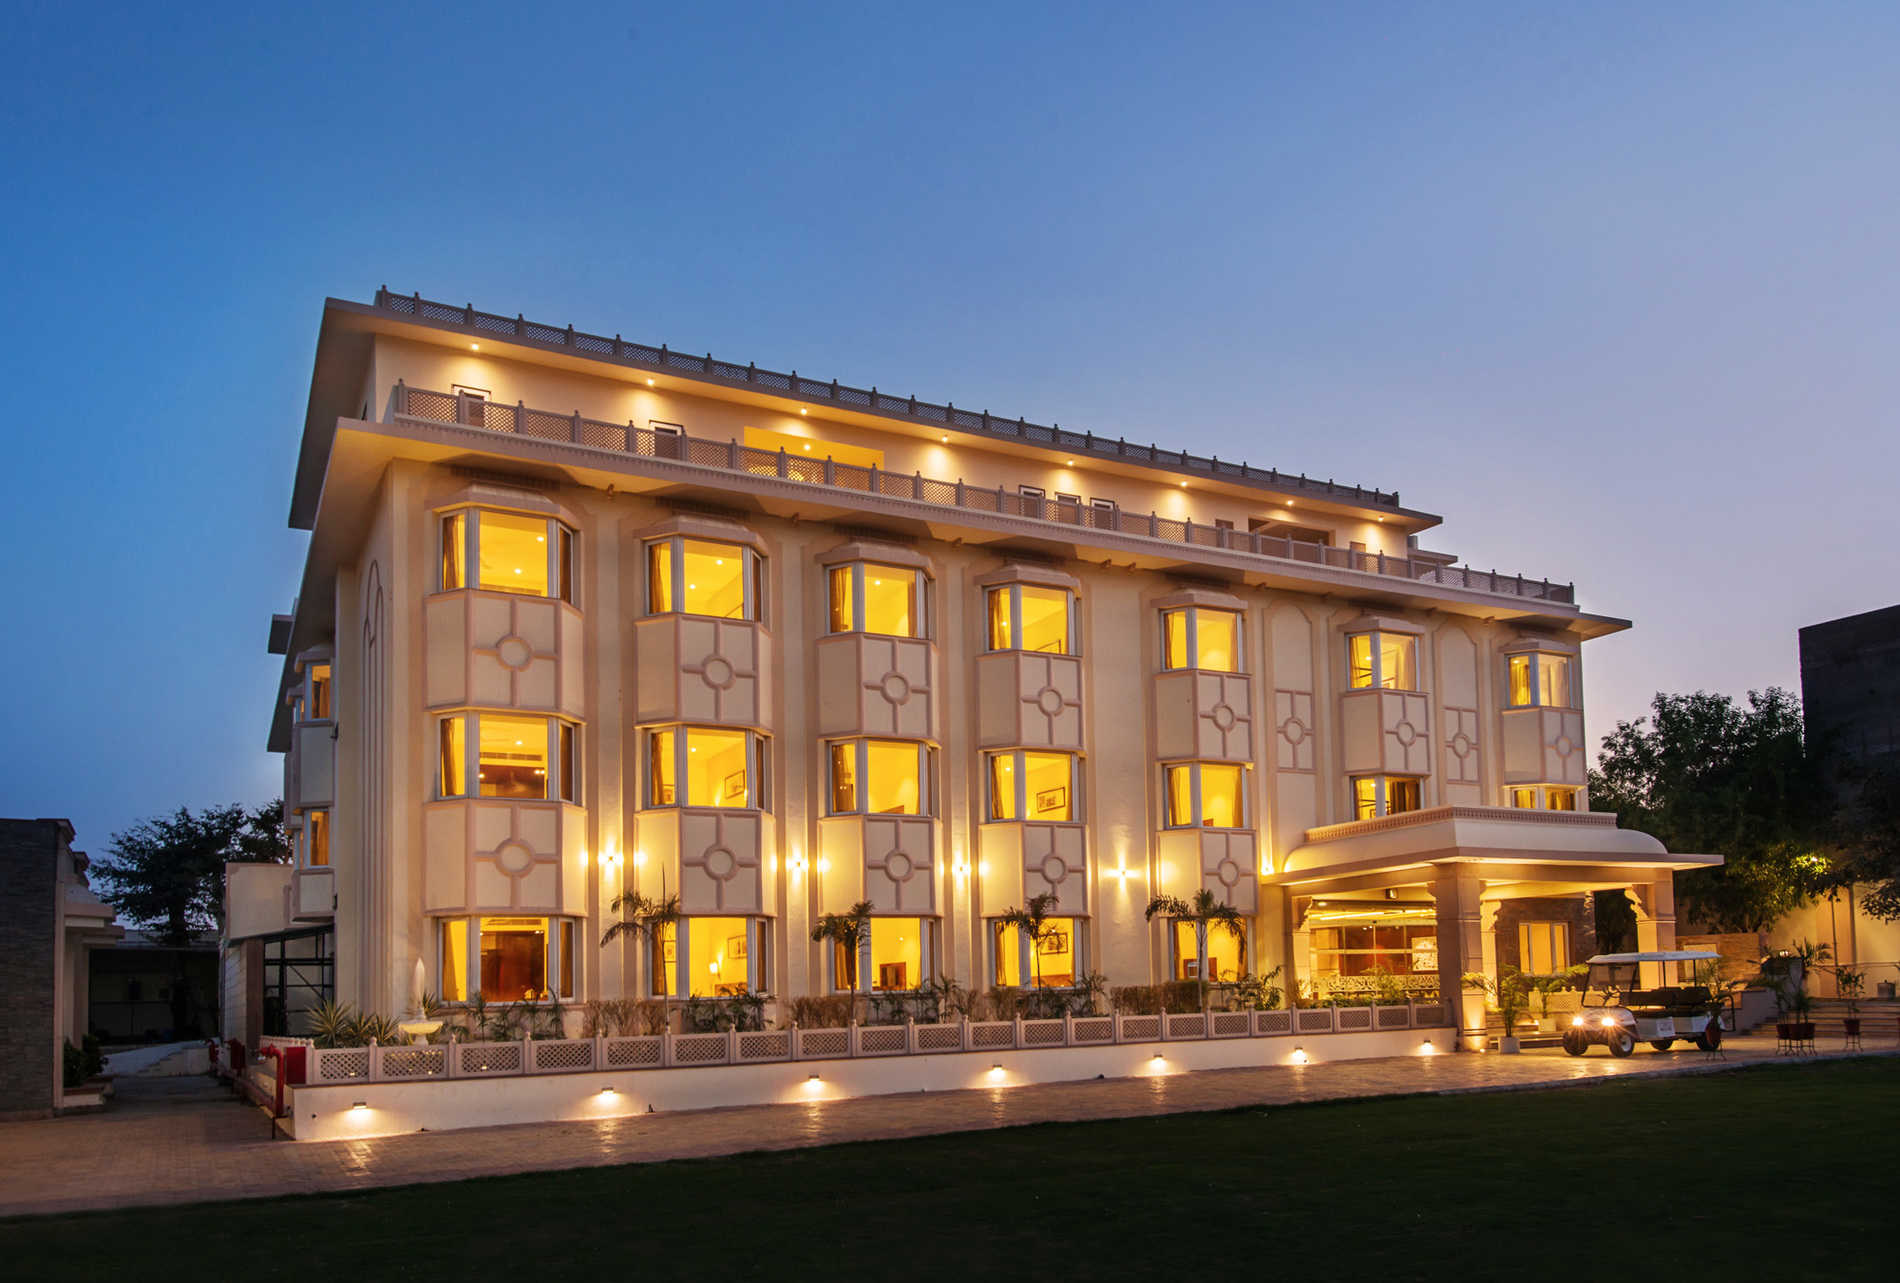 kk royal Hotel & convention centre amer jaipur